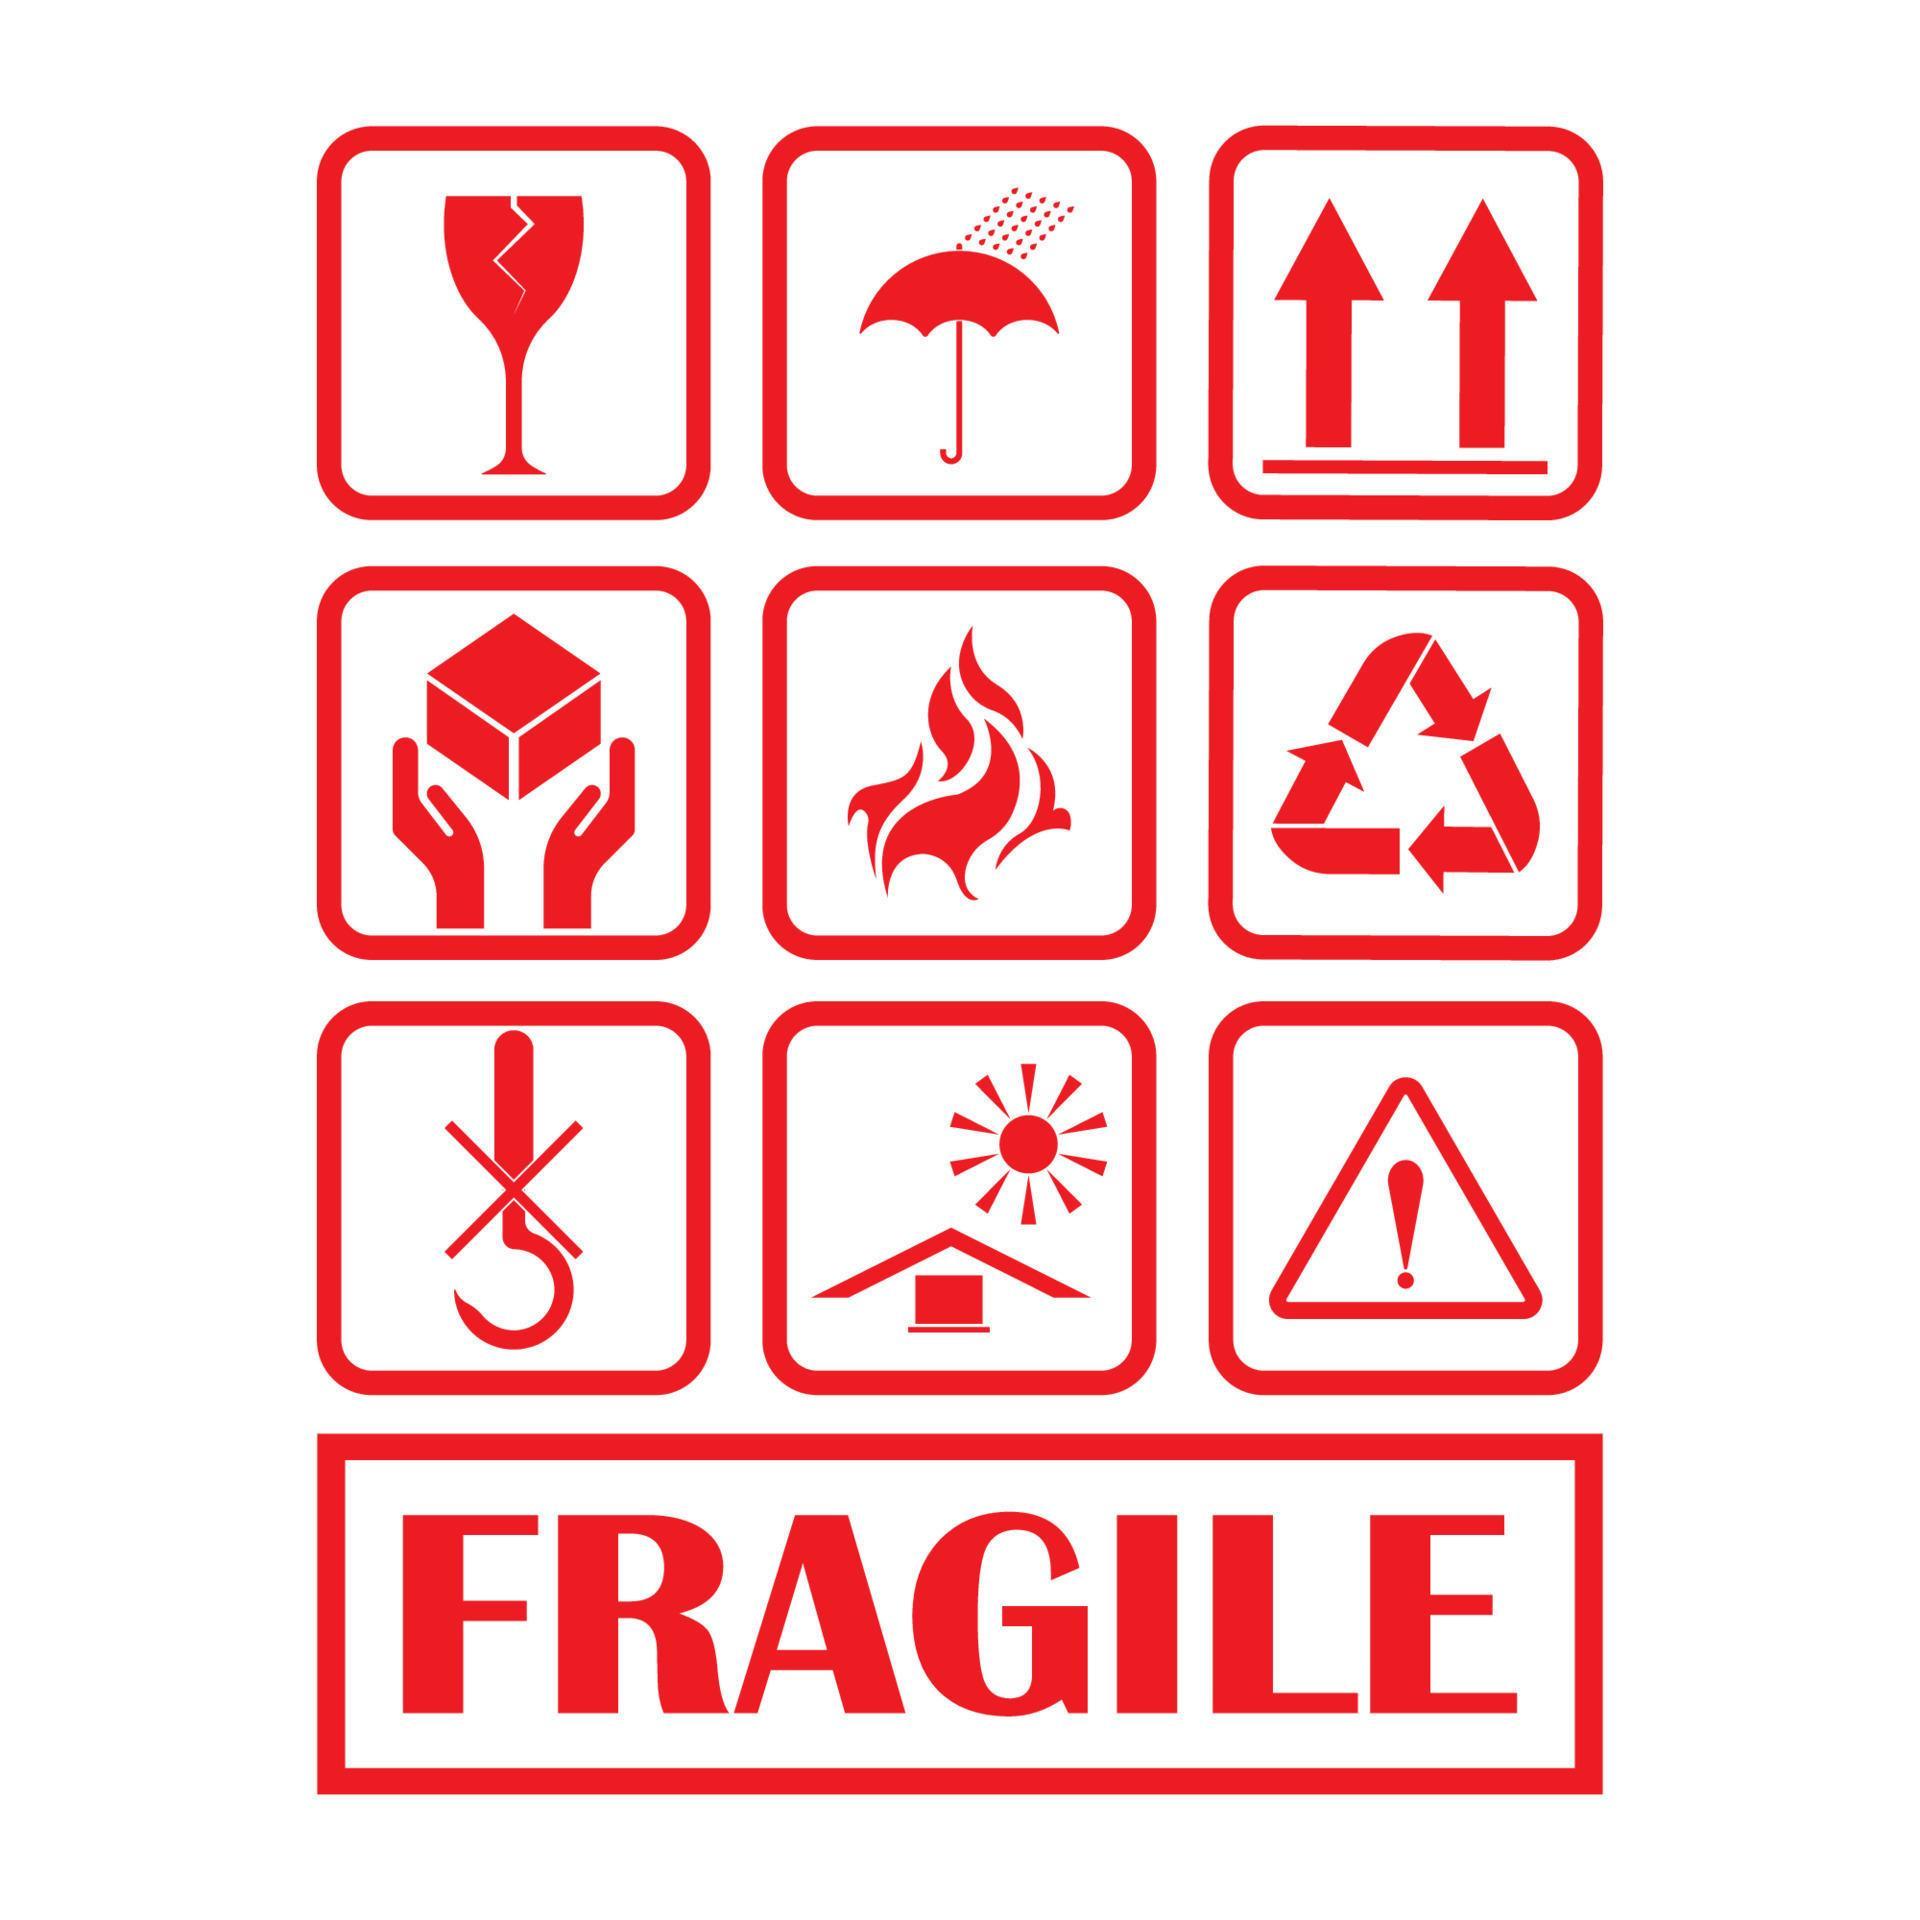 fragile logo